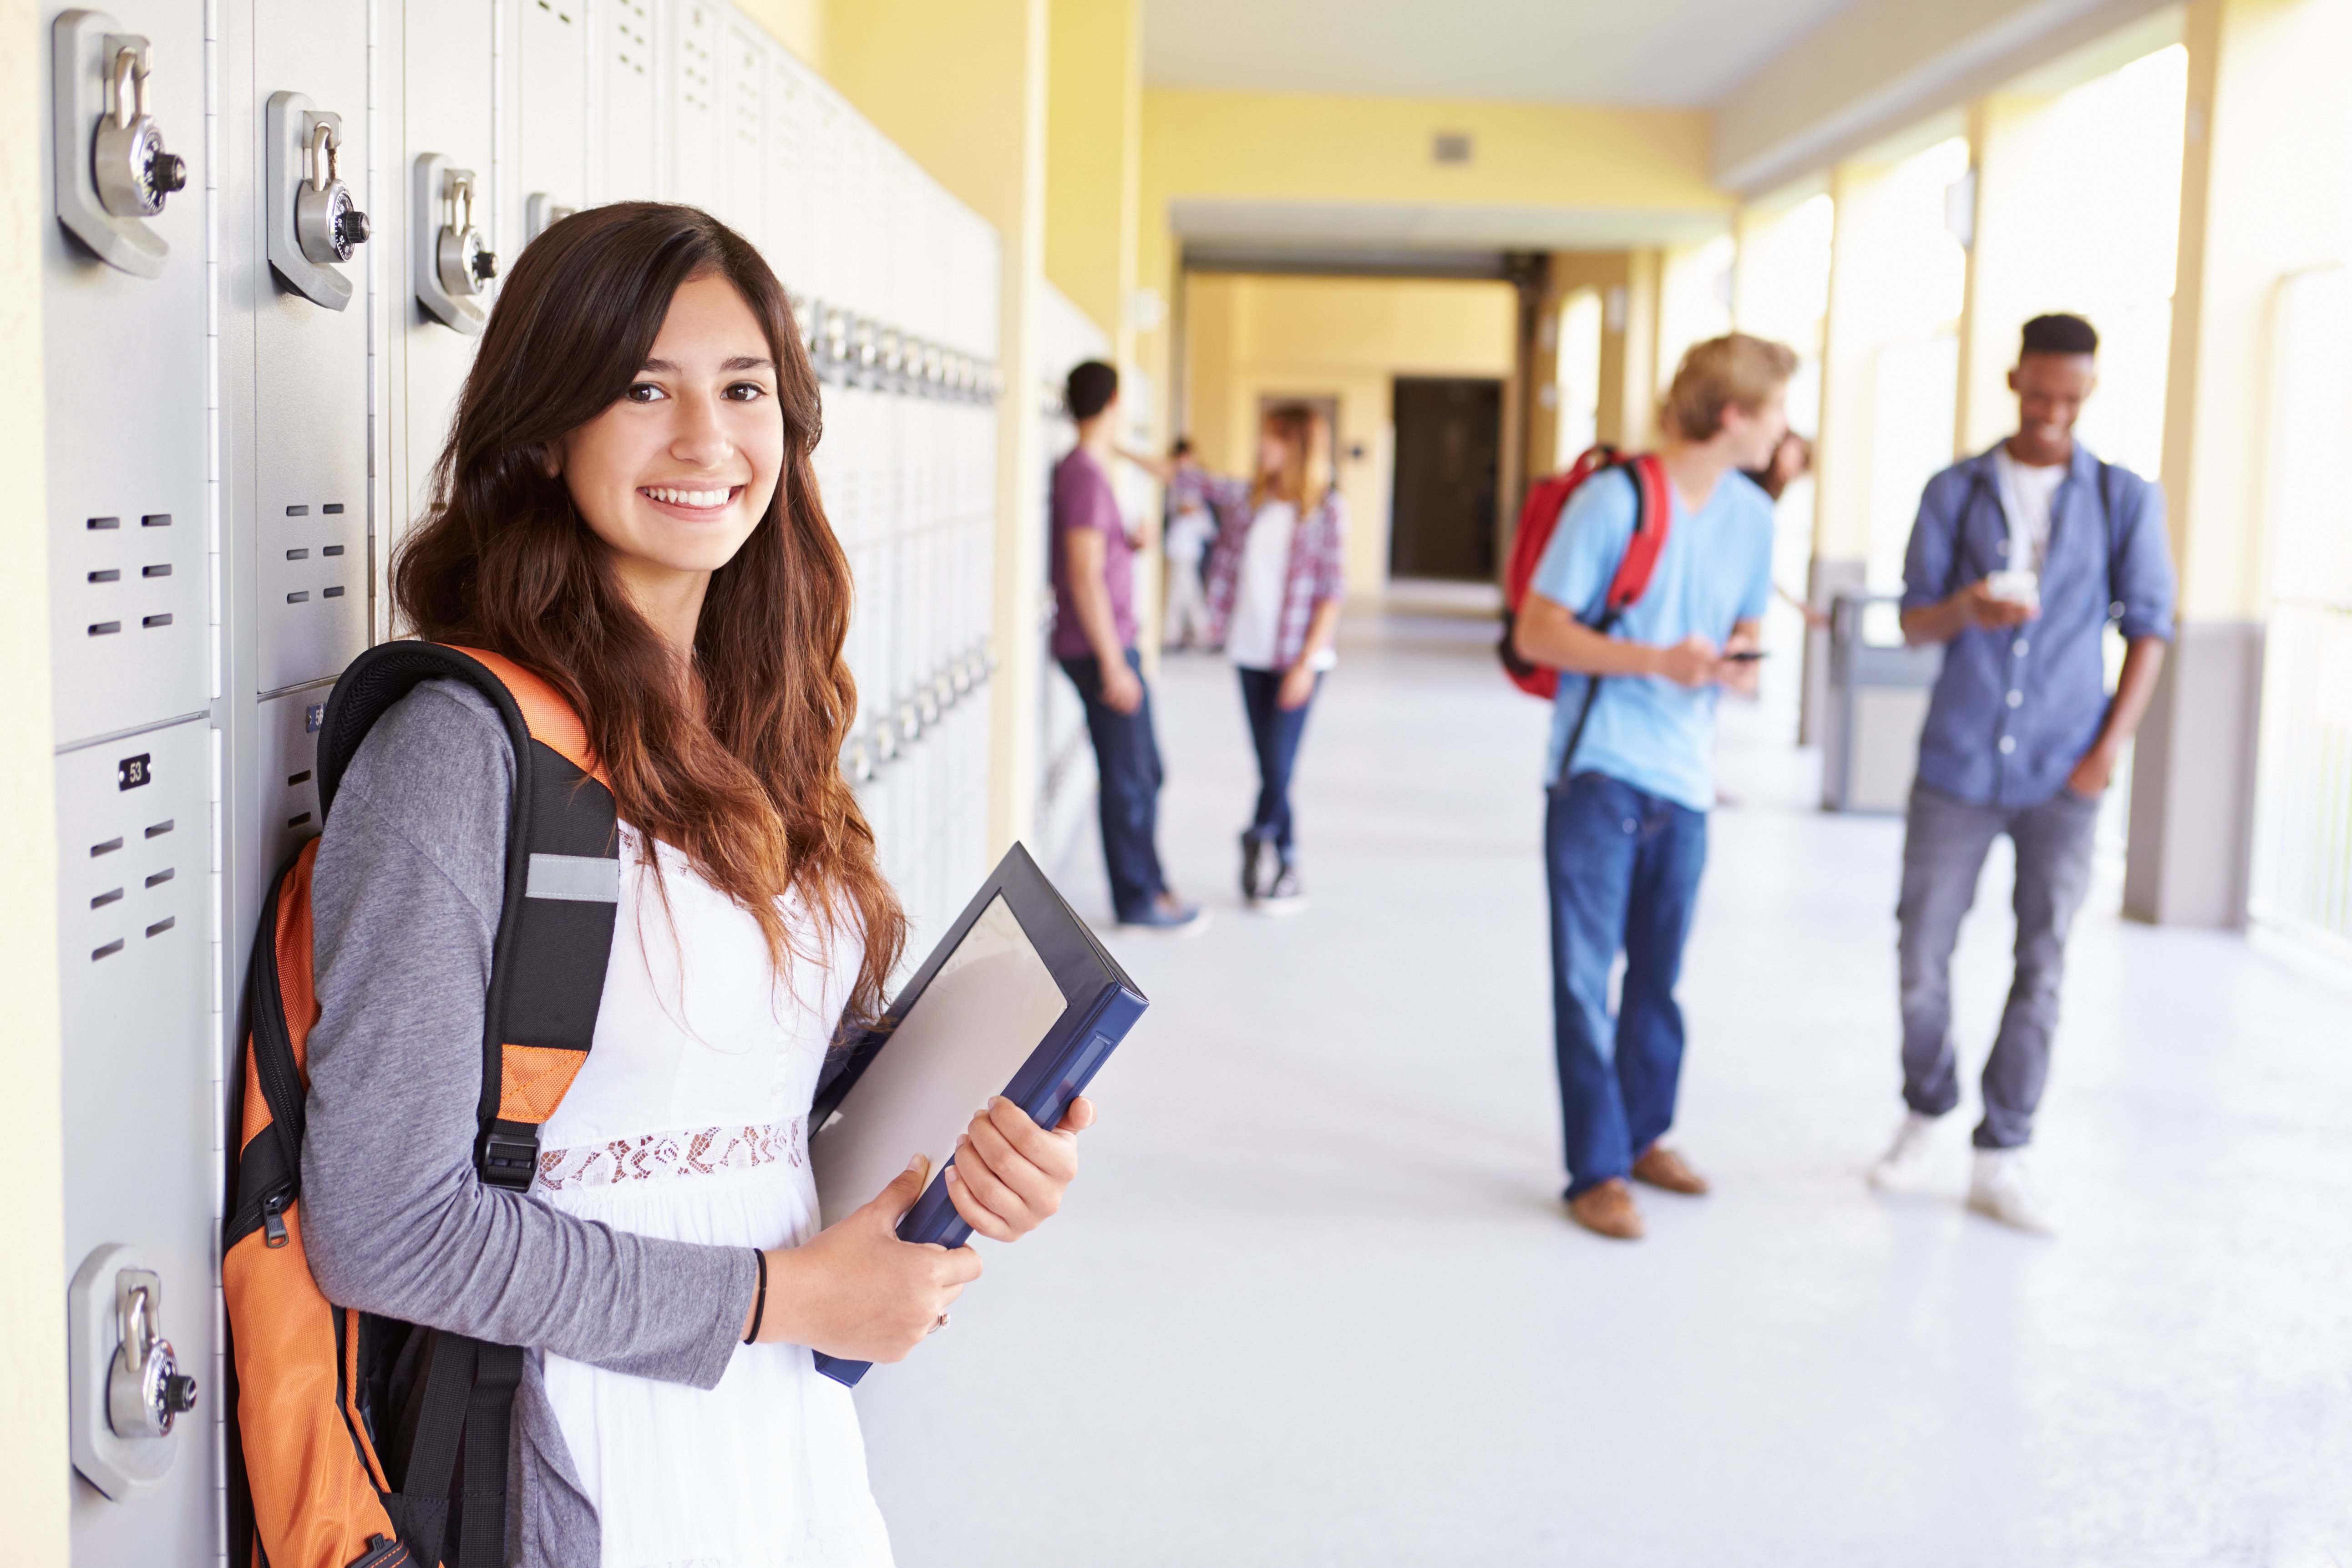 High school girl leaning against locker in crowded school hallway